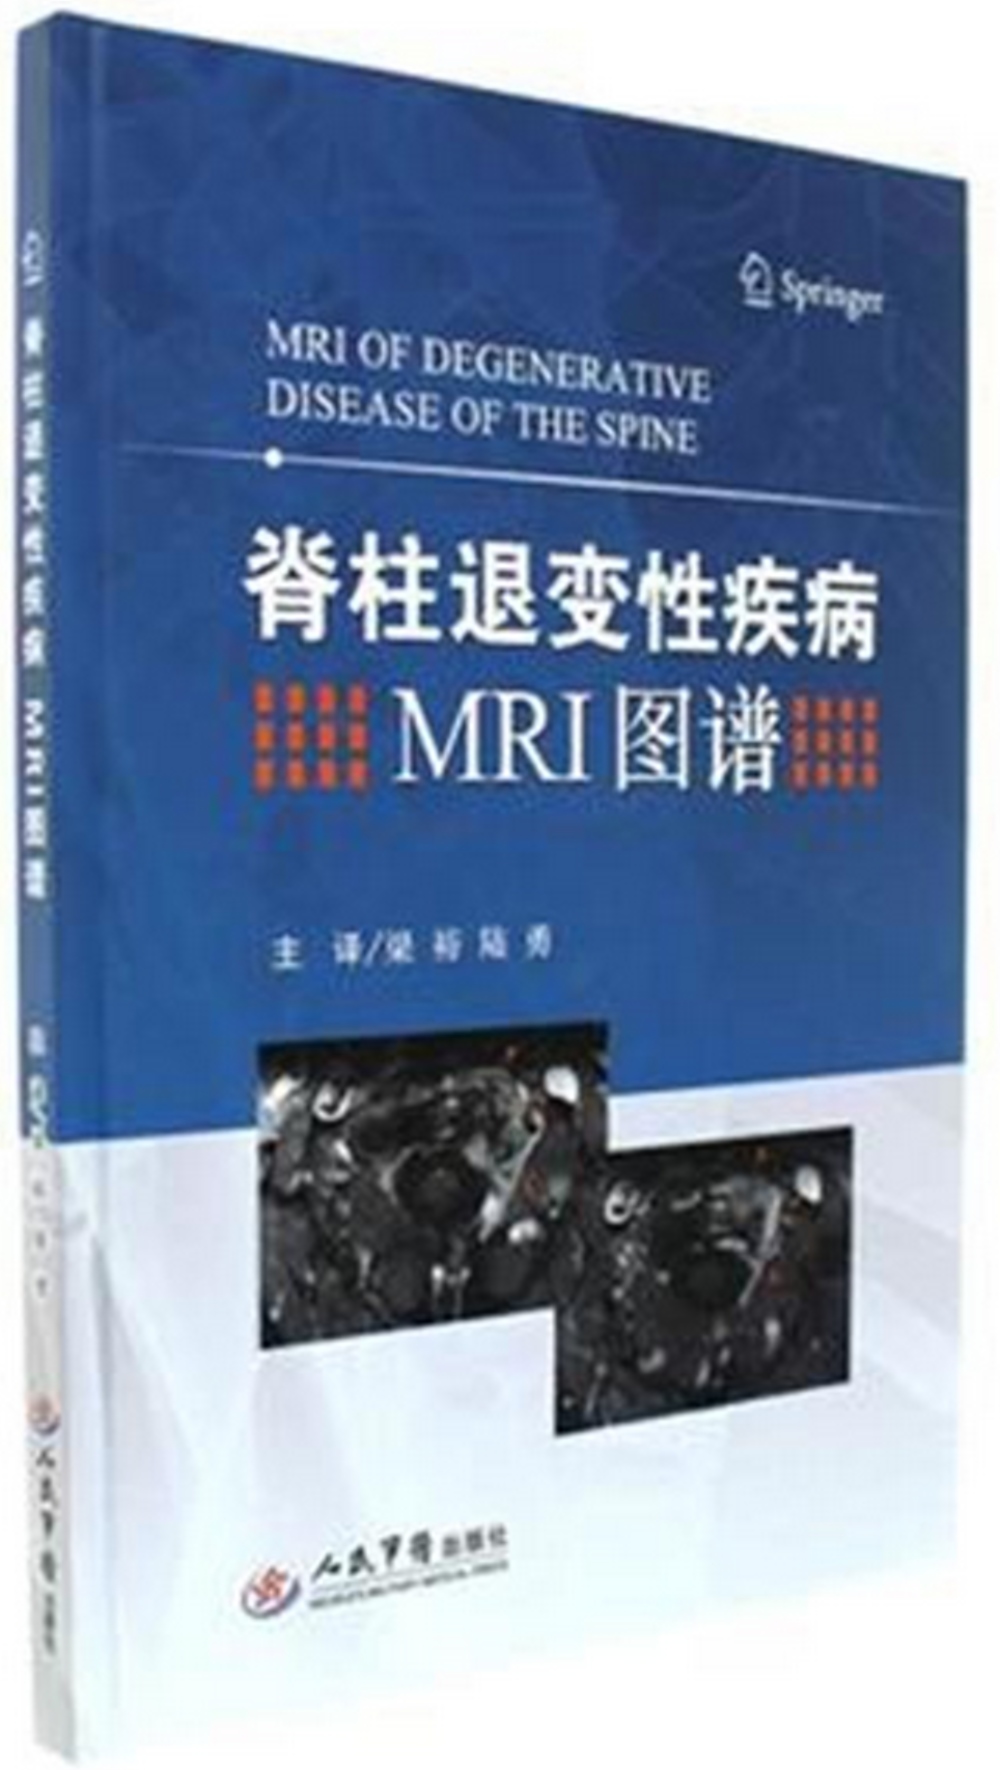 脊柱退變性疾病MRI圖譜